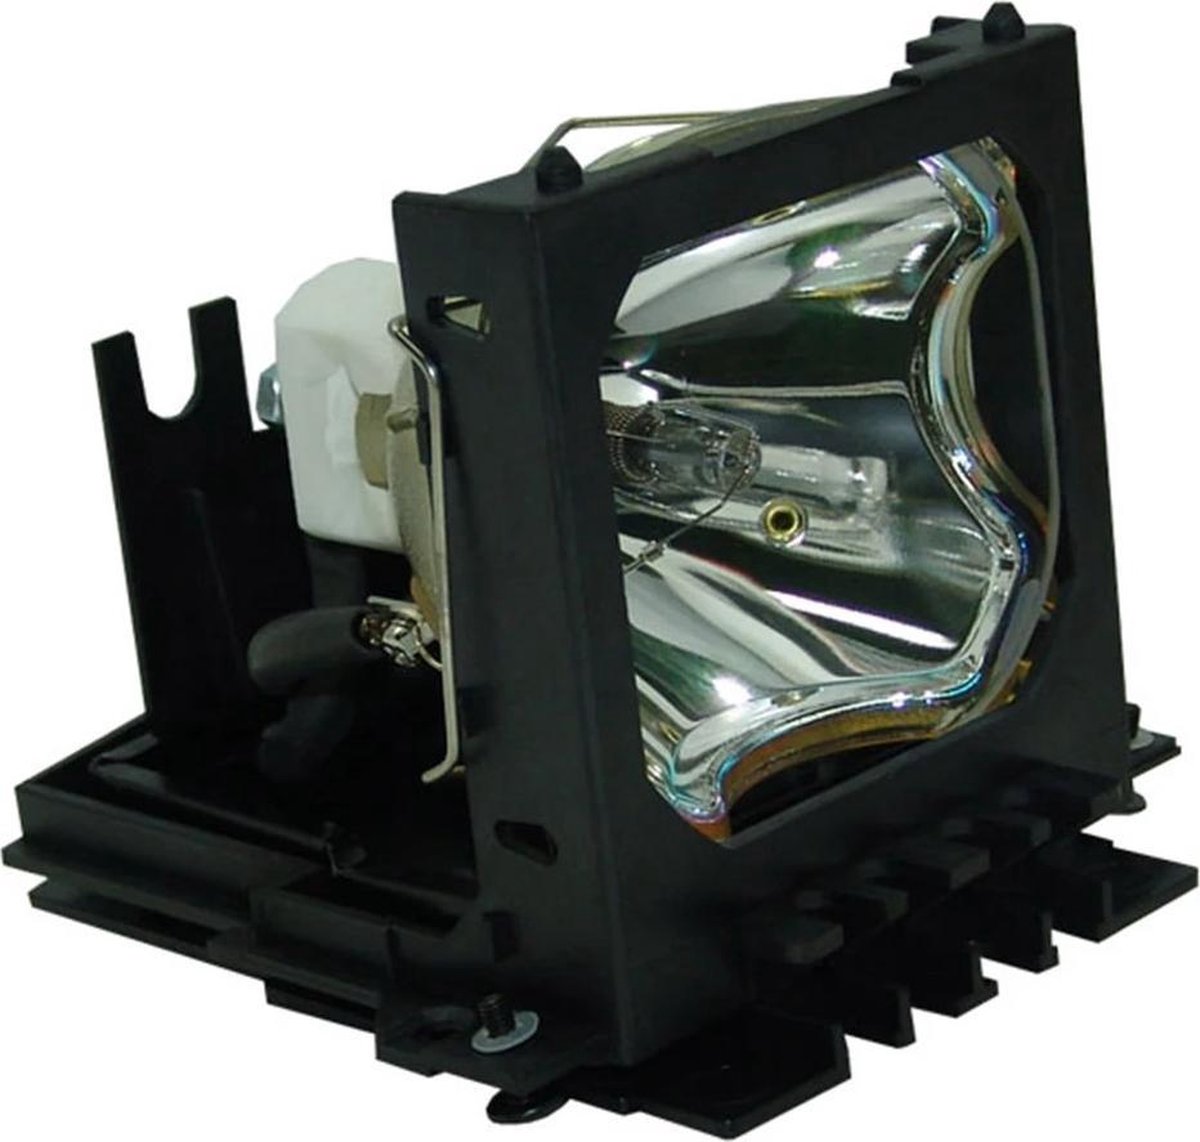 Beamerlamp geschikt voor de 3M X80 beamer, lamp code 78-6969-9719-2. Bevat originele NSH lamp, prestaties gelijk aan origineel. - QualityLamp